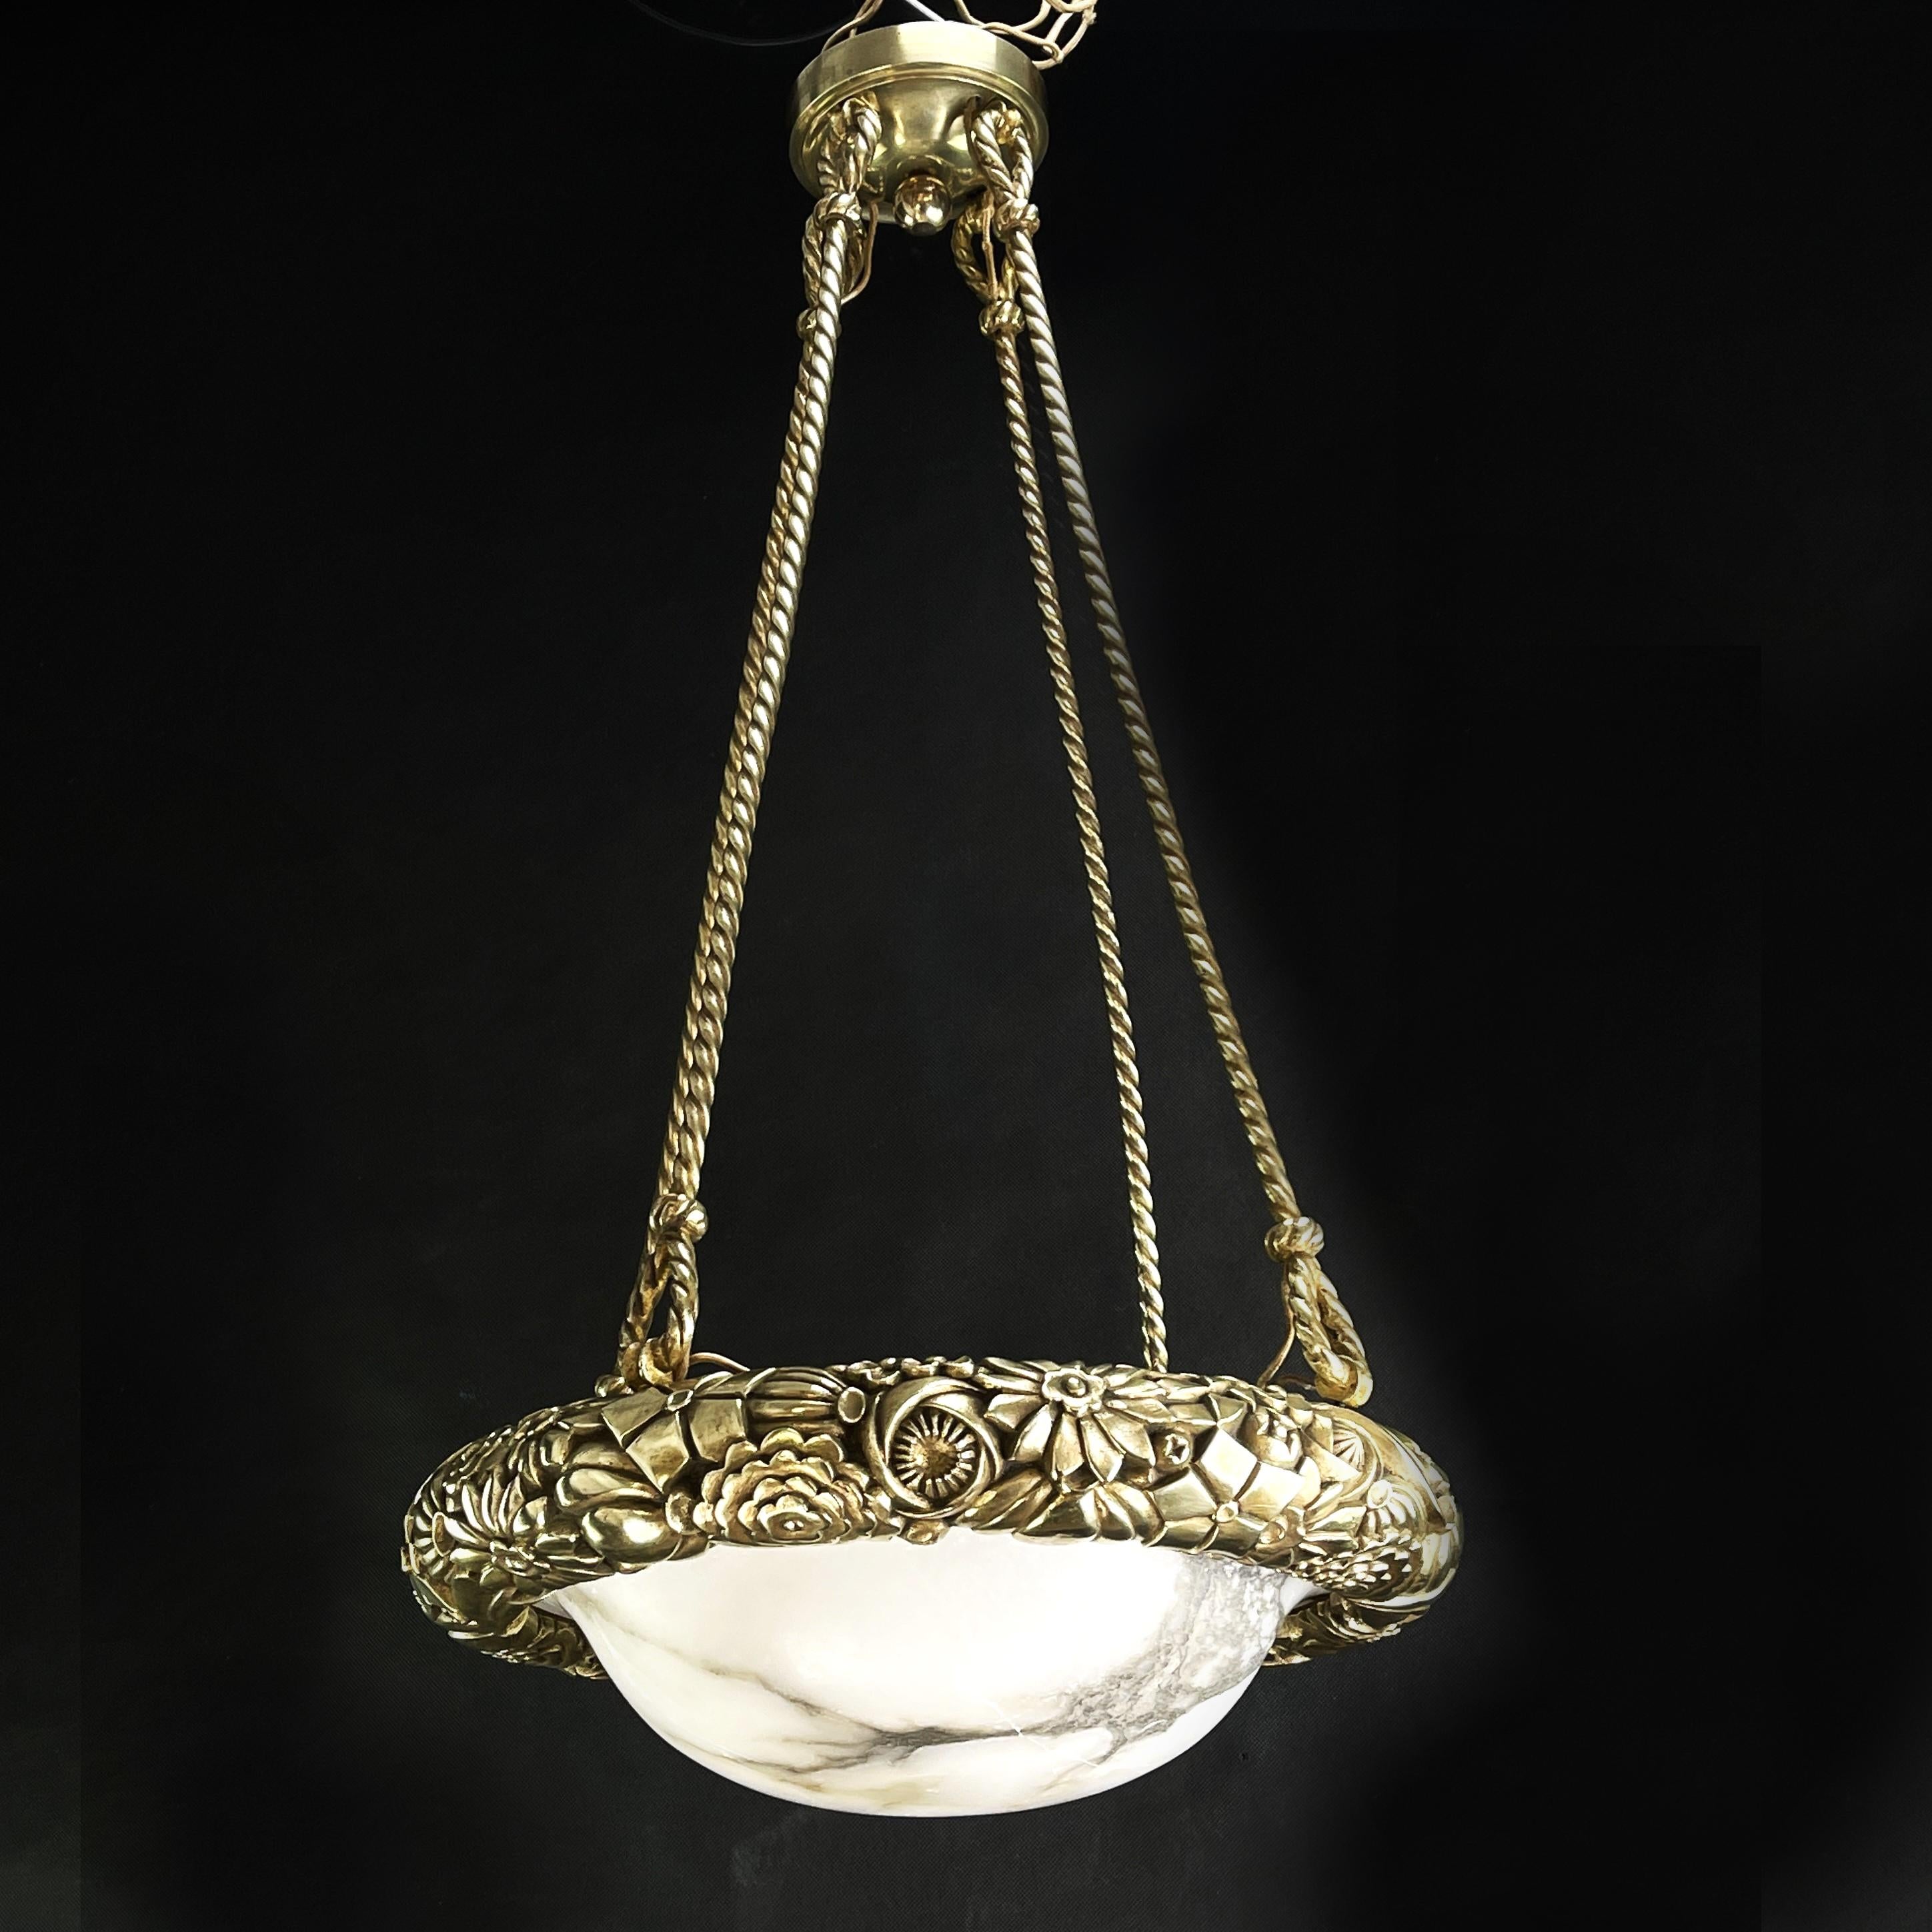 Cette magnifique lampe suspendue ancienne et florale séduit par son design Art Déco simple et sobre. La lampe donne une lumière très agréable. Ce plafonnier est un classique absolu du design de la période Art déco.

La lampe est équipée de quatre